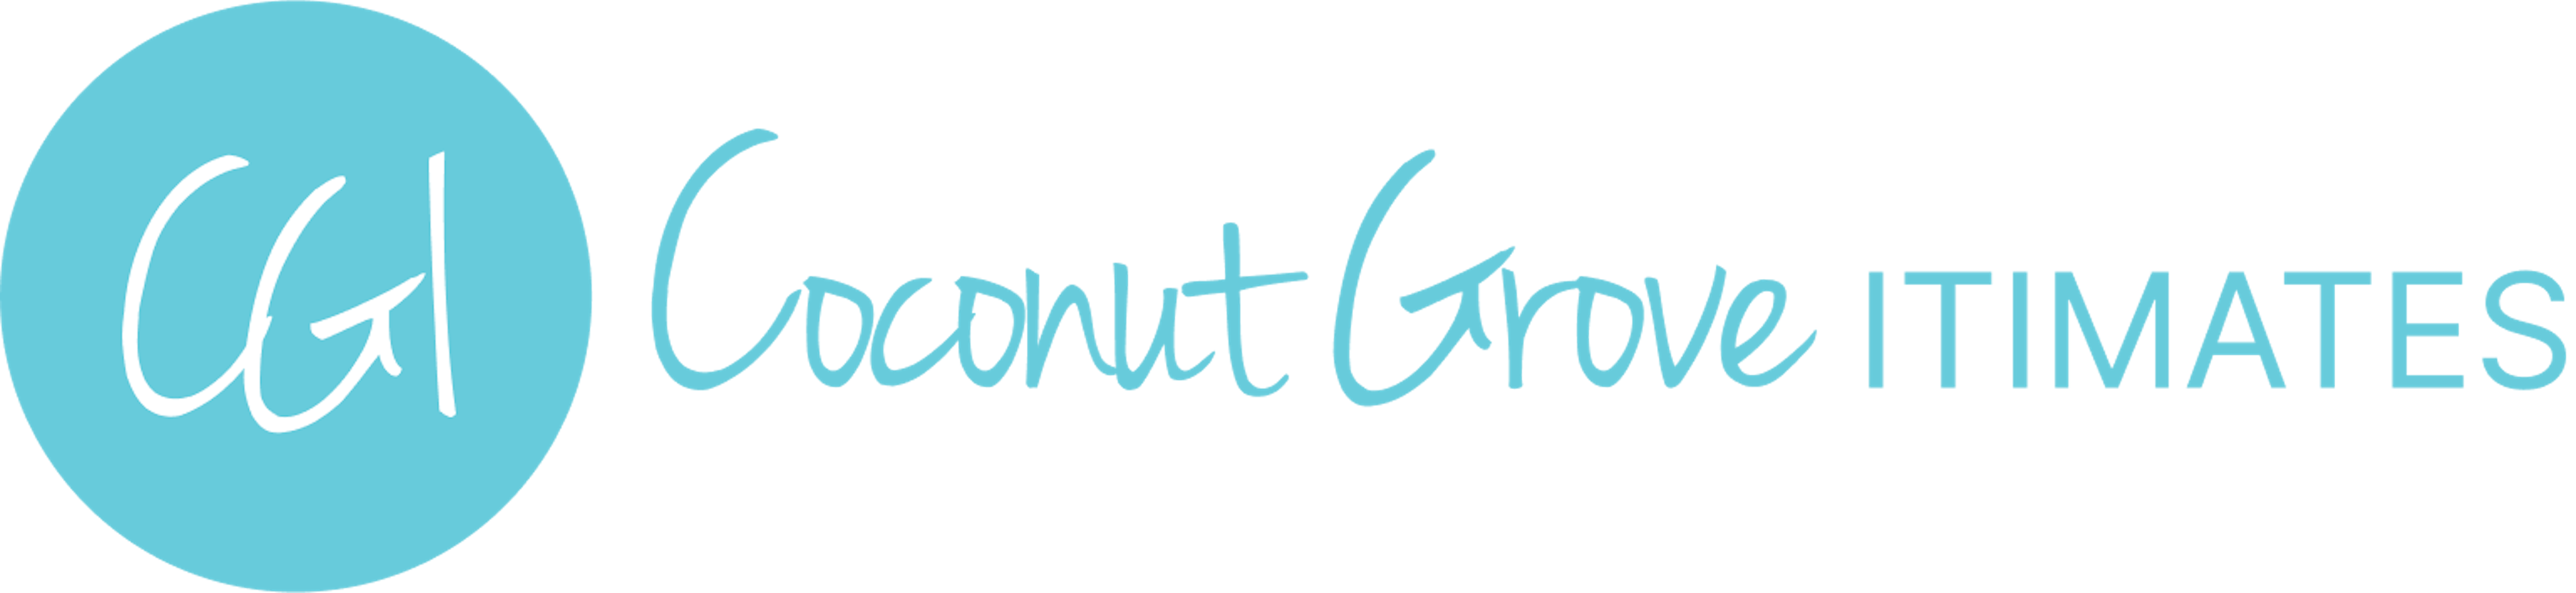 solution driven coconut grove